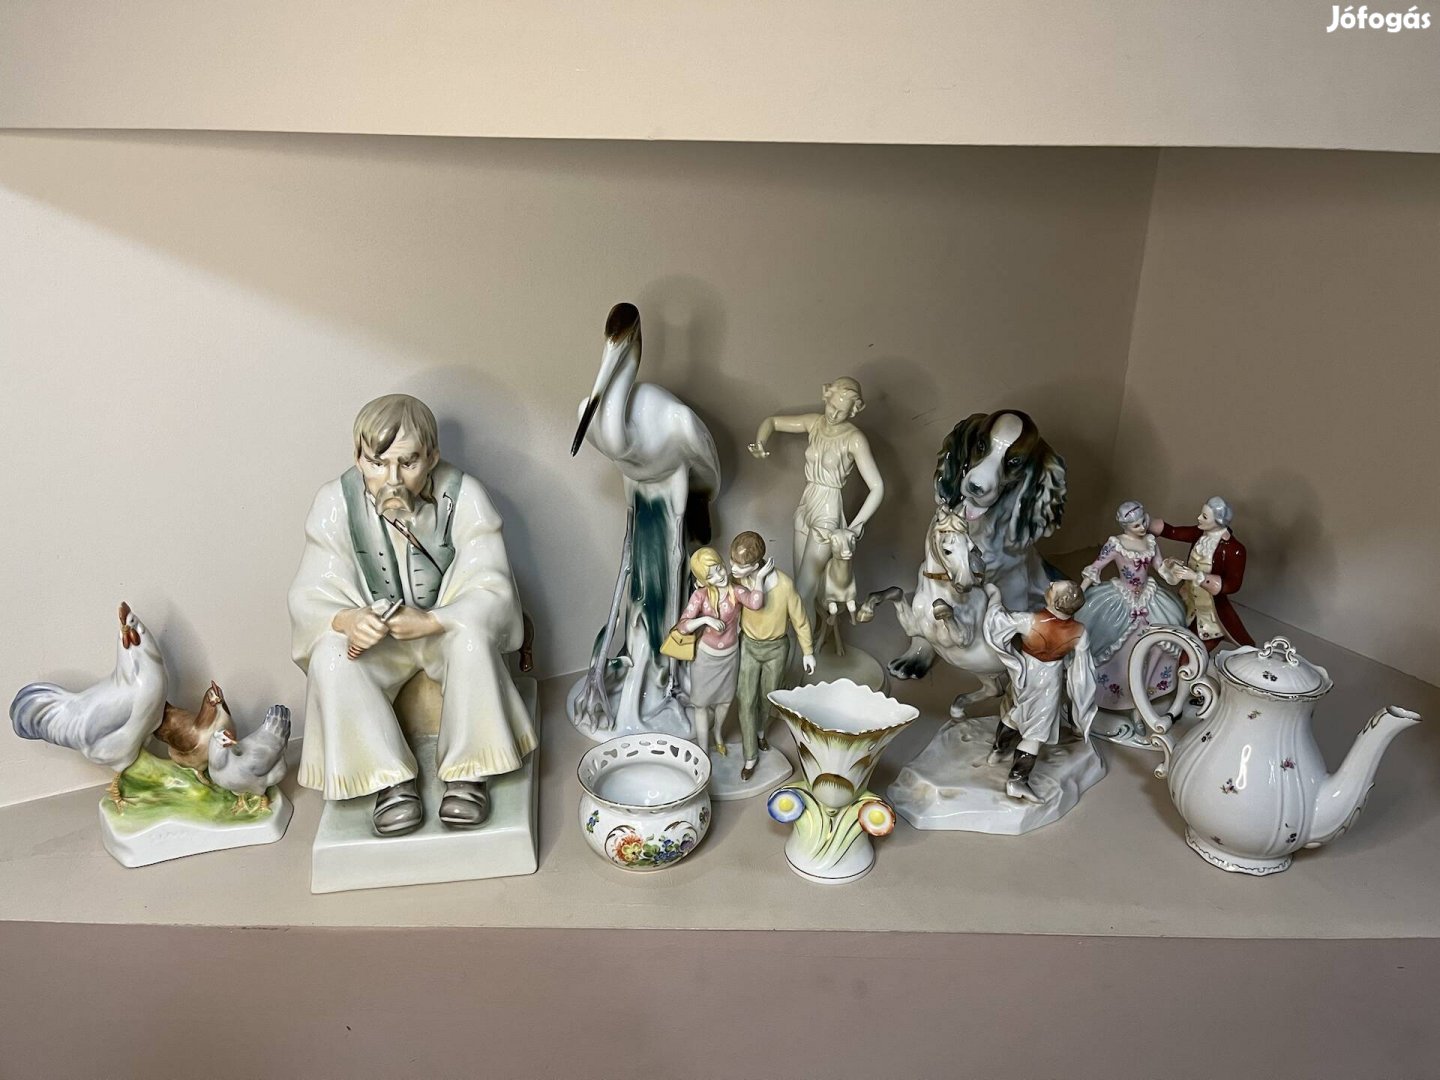 Keresek: Keresek régi porcelán tárgyakat magánygyűjteménybe